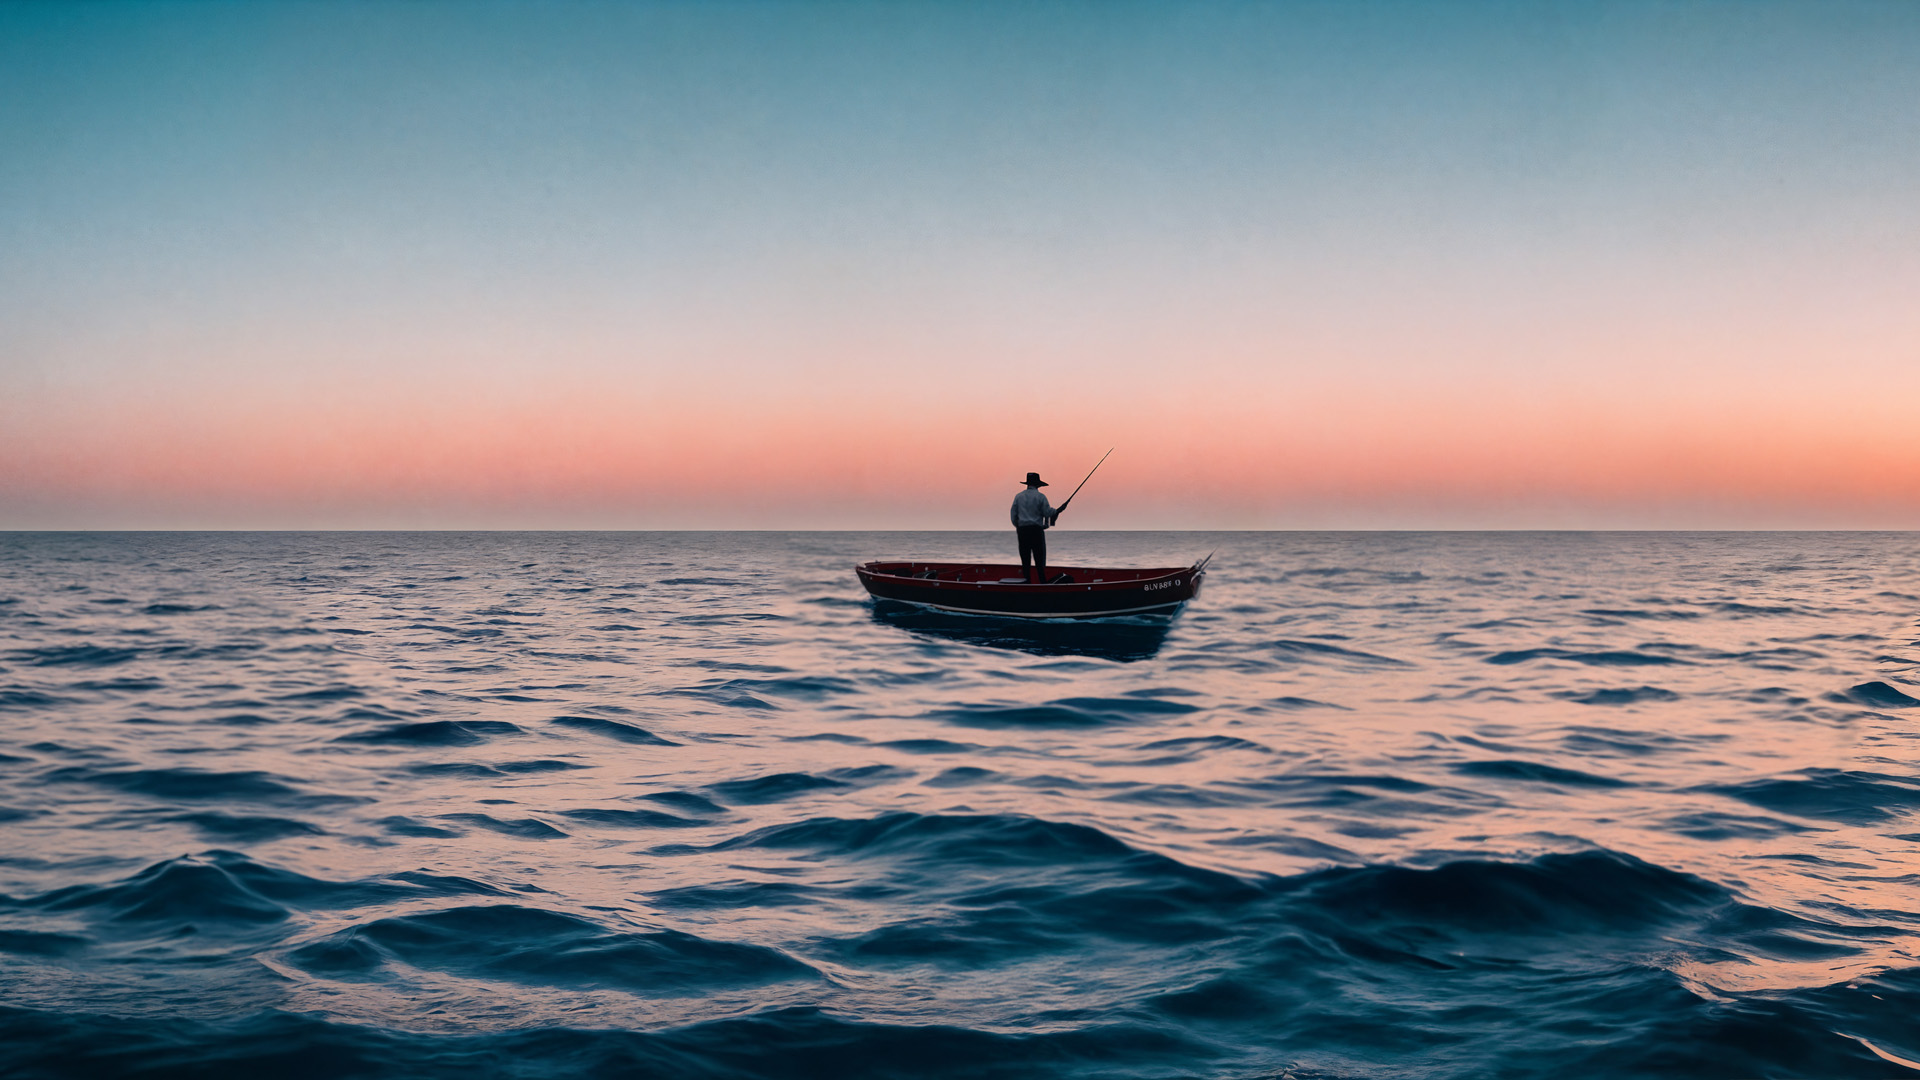 samotny rybak, łódź, nieskończoność, tapeta na pulpit, woda, spokój, cisza, medytacja, pośrodku niczego, daleko, jedność z naturą, rybołówstwo, ocean, niebo, horyzont